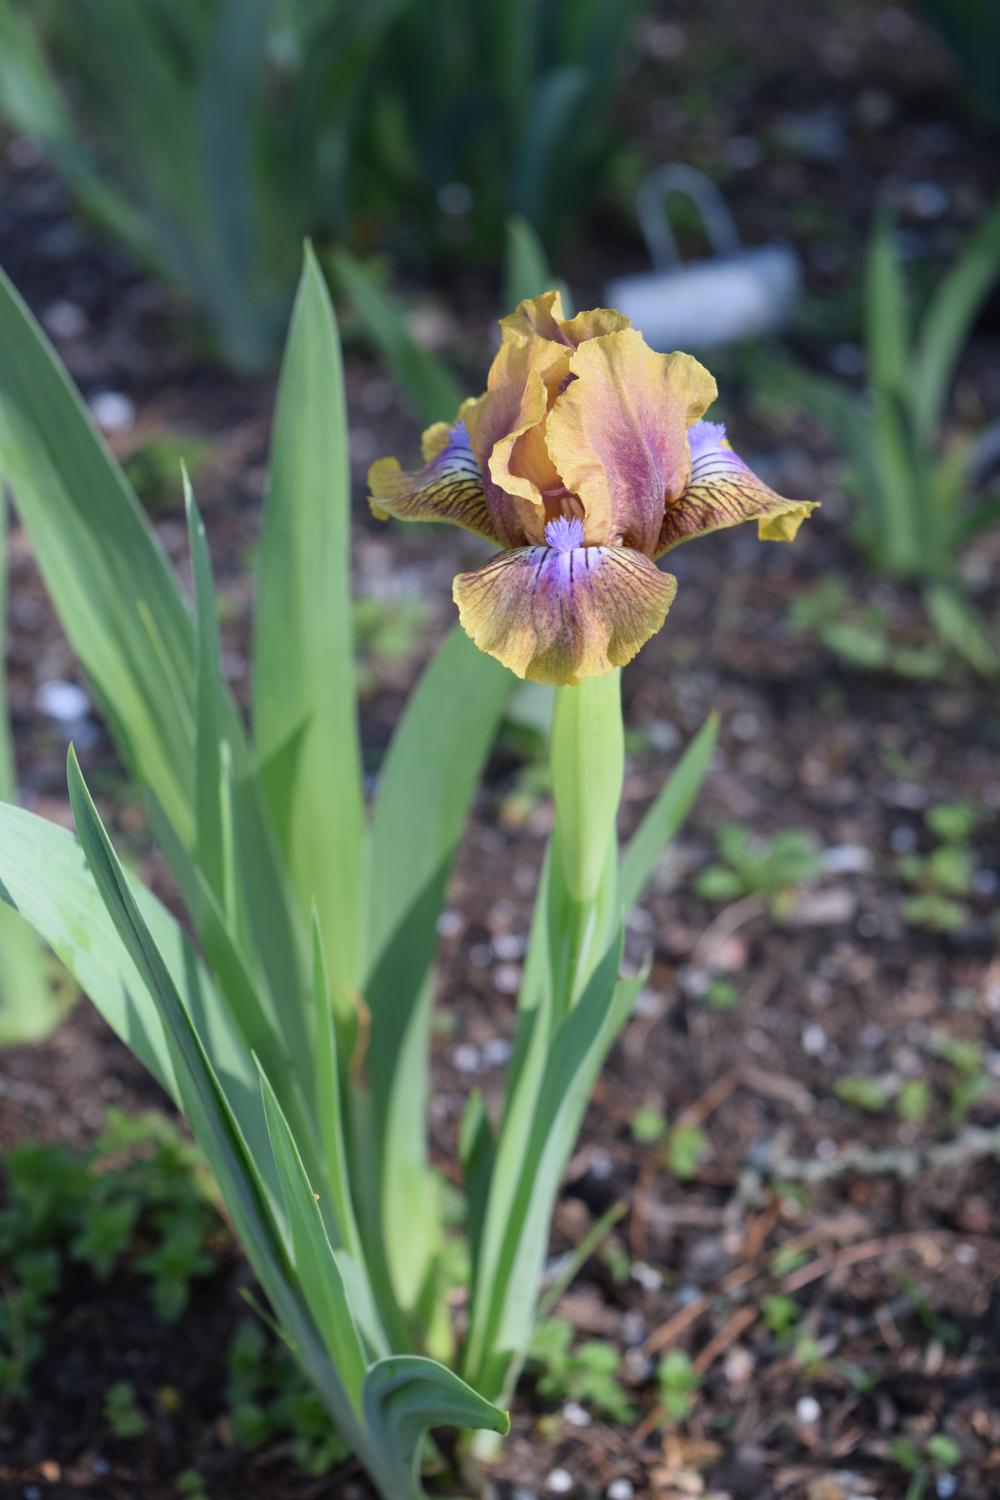 Photo of Standard Dwarf Bearded Iris (Iris 'Kewlopolis') uploaded by Dachsylady86